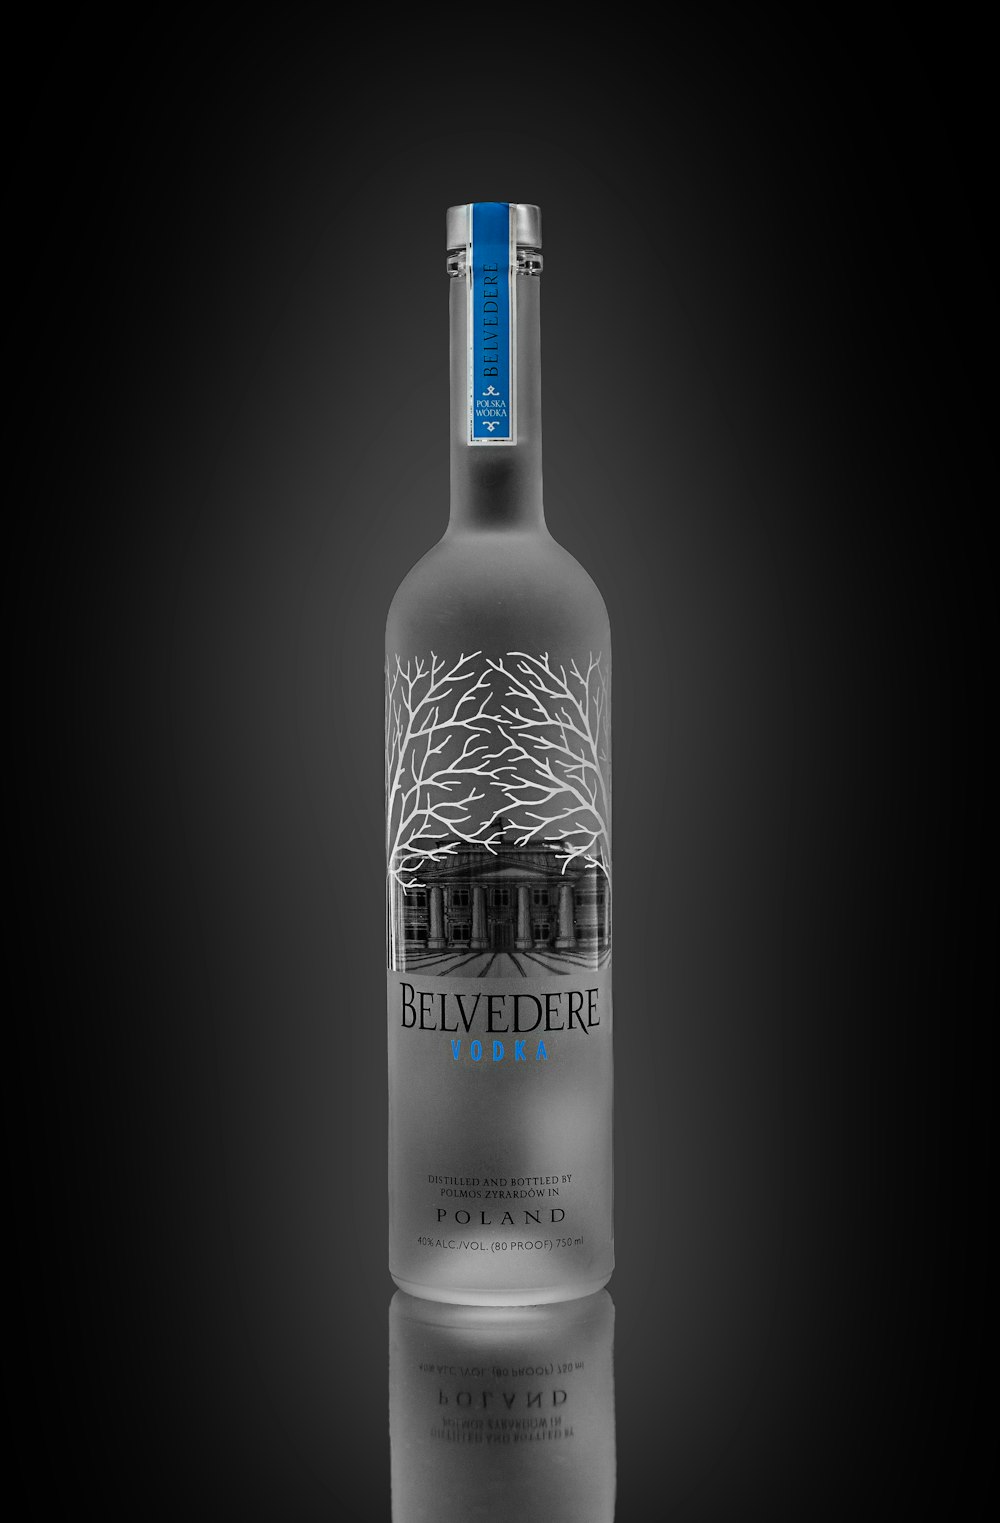 a bottle of belvedere vodka on a black background